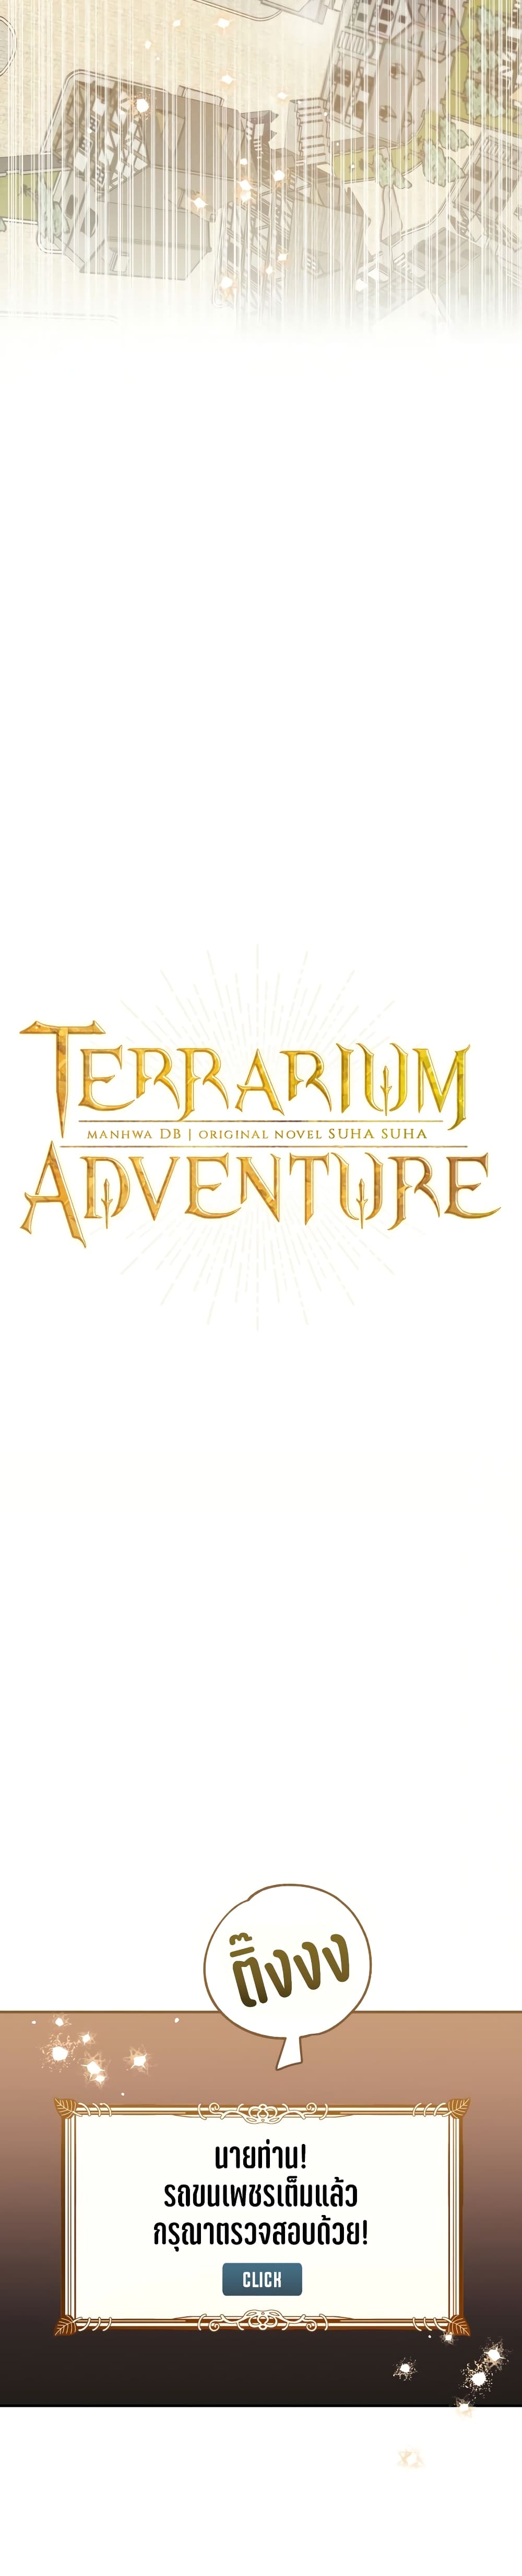 Terrarium Adventure ตอนที่ 1 (5)